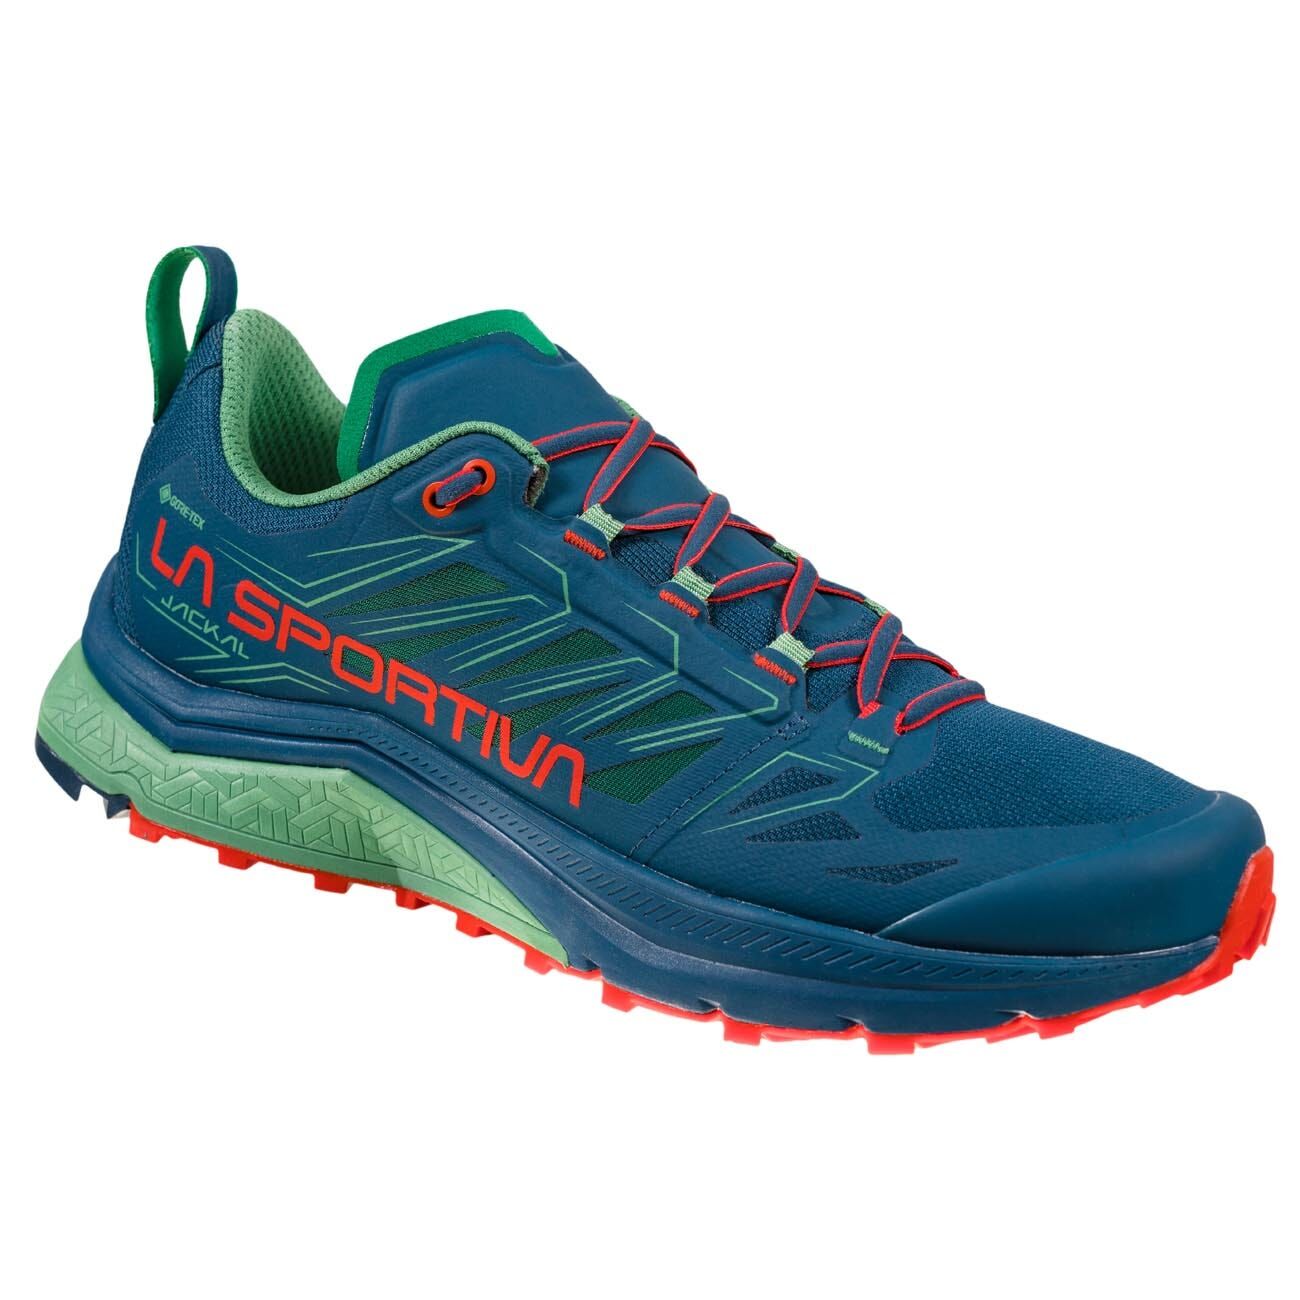 La Sportiva Jackal GTX - Trail running shoes - Women's